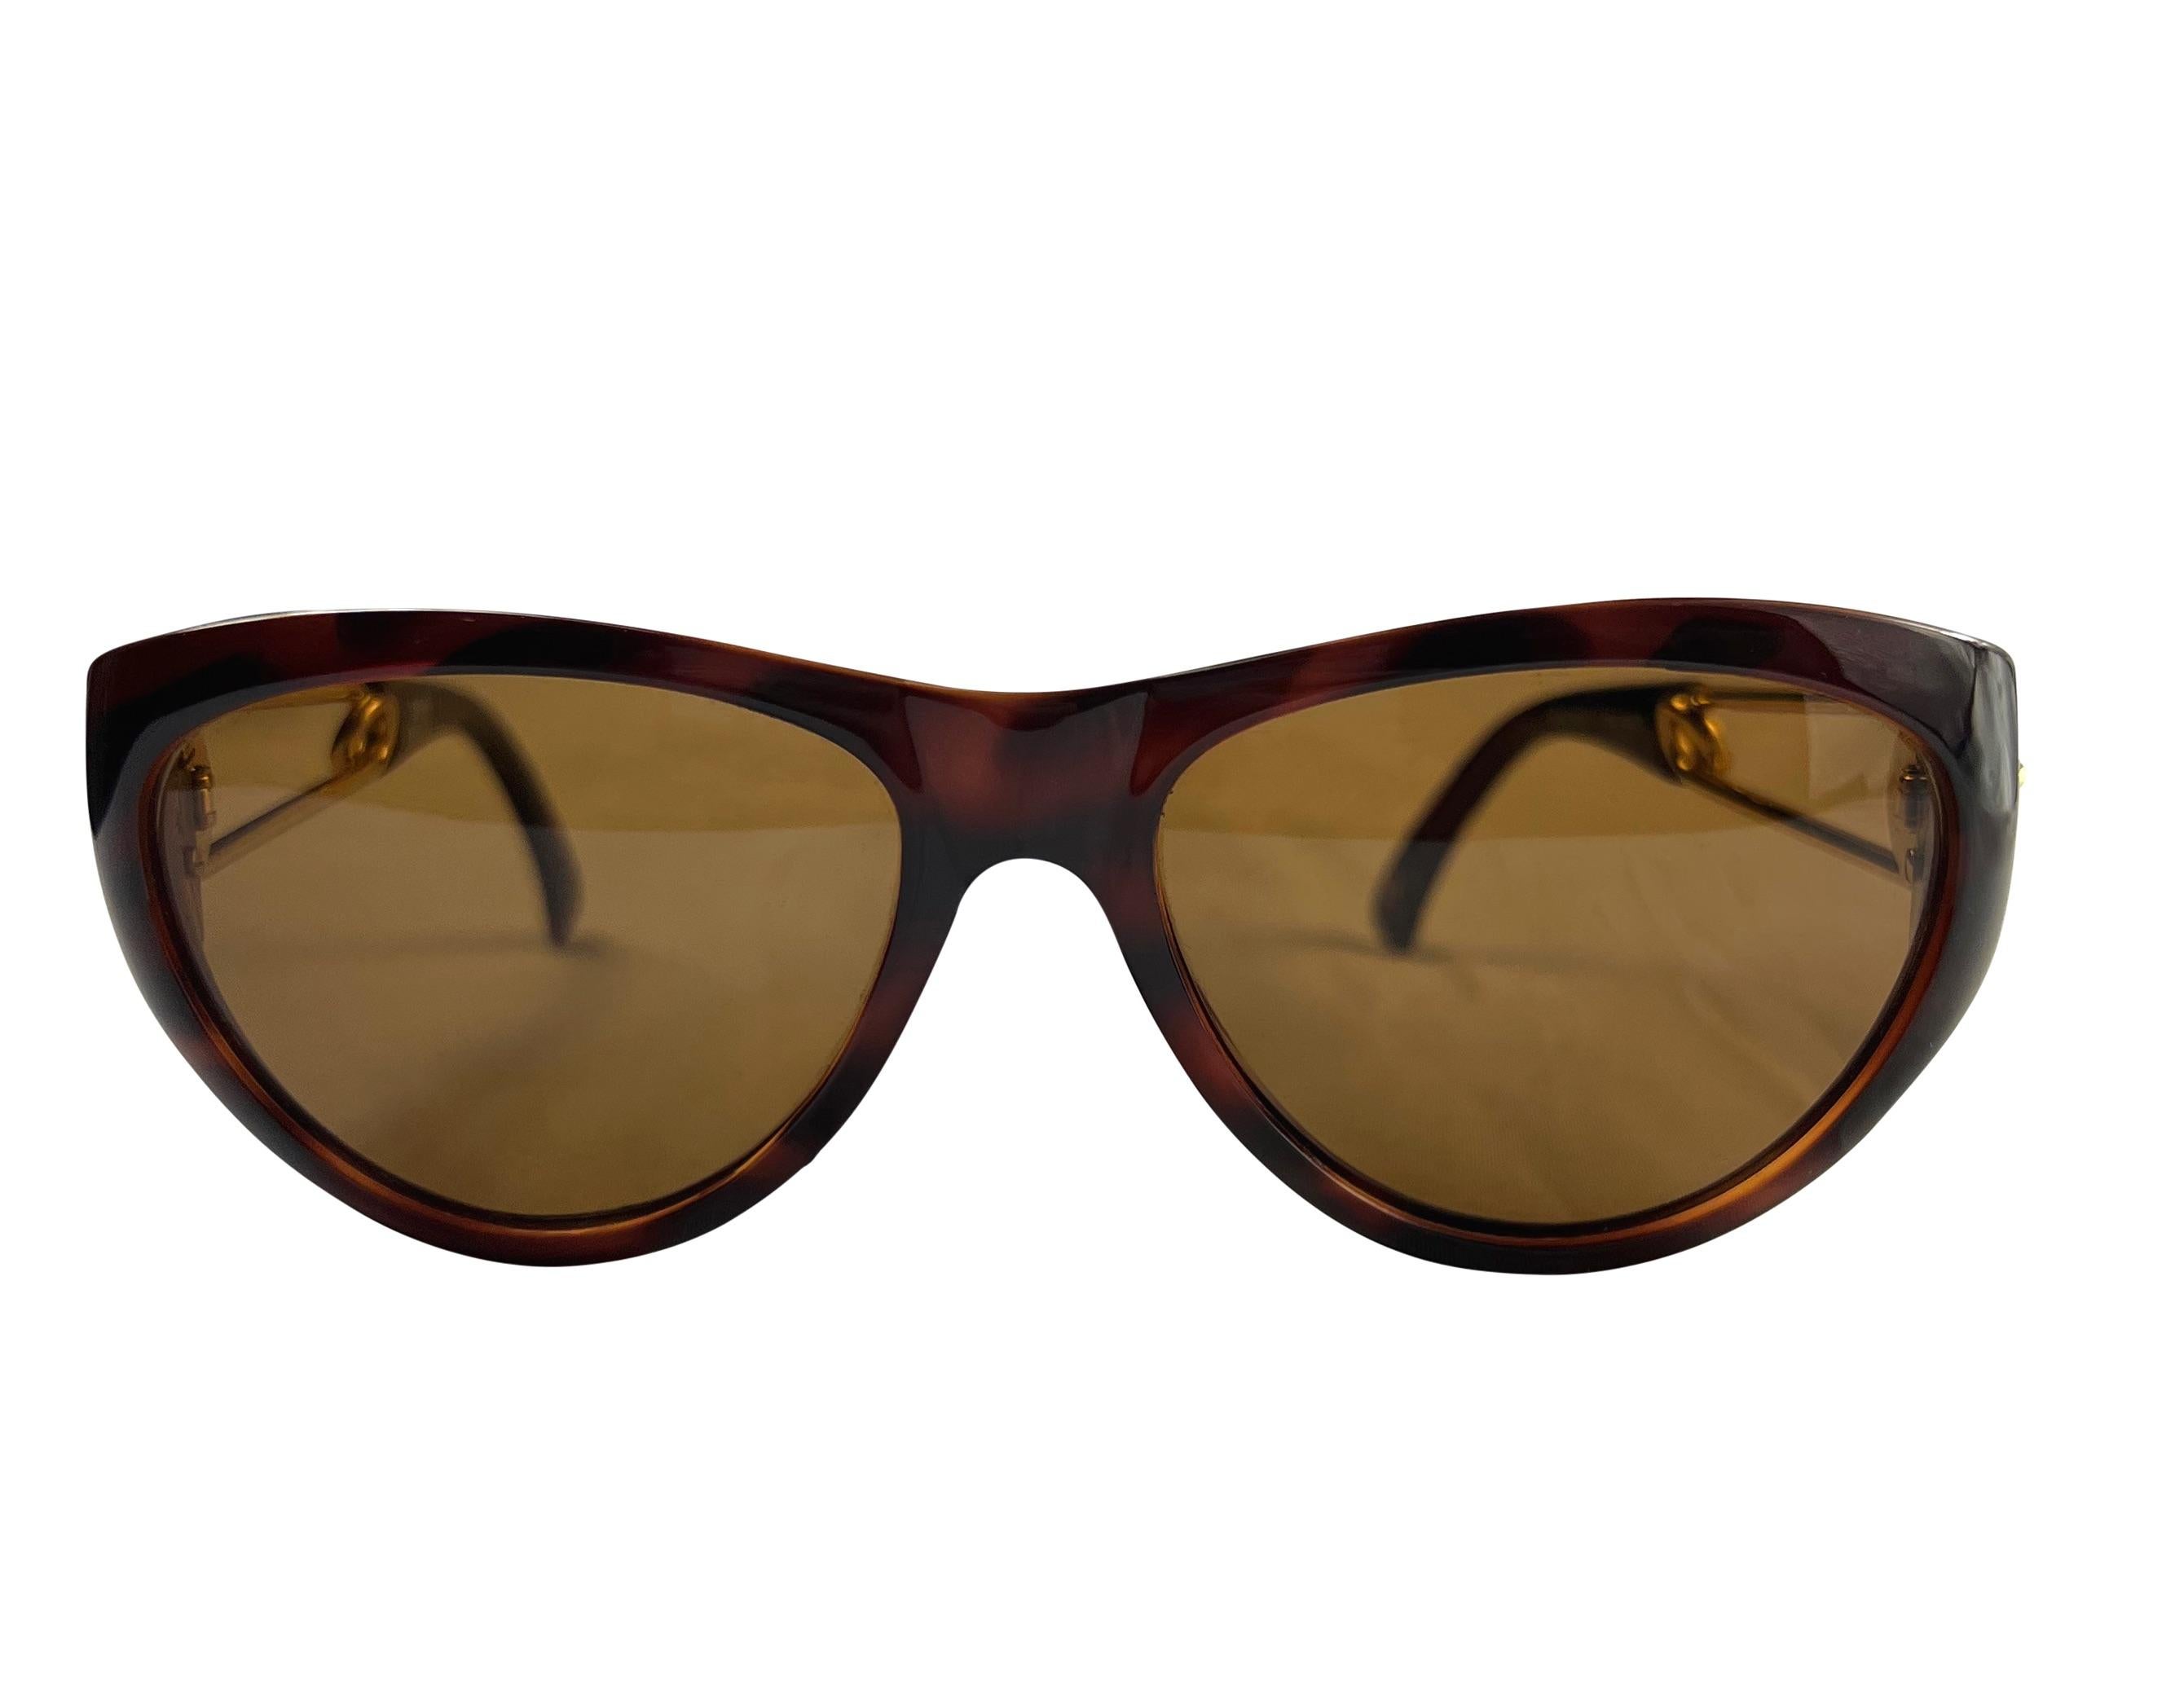 Wir präsentieren eine unglaubliche braune und goldfarbene Gianni Versace-Sonnenbrille, entworfen von Gianni Versace. Diese Sonnenbrille aus der Frühjahr/Sommer-Kollektion 1994 zeichnet sich durch ein subtiles Katzenaugen-Design und das berühmte